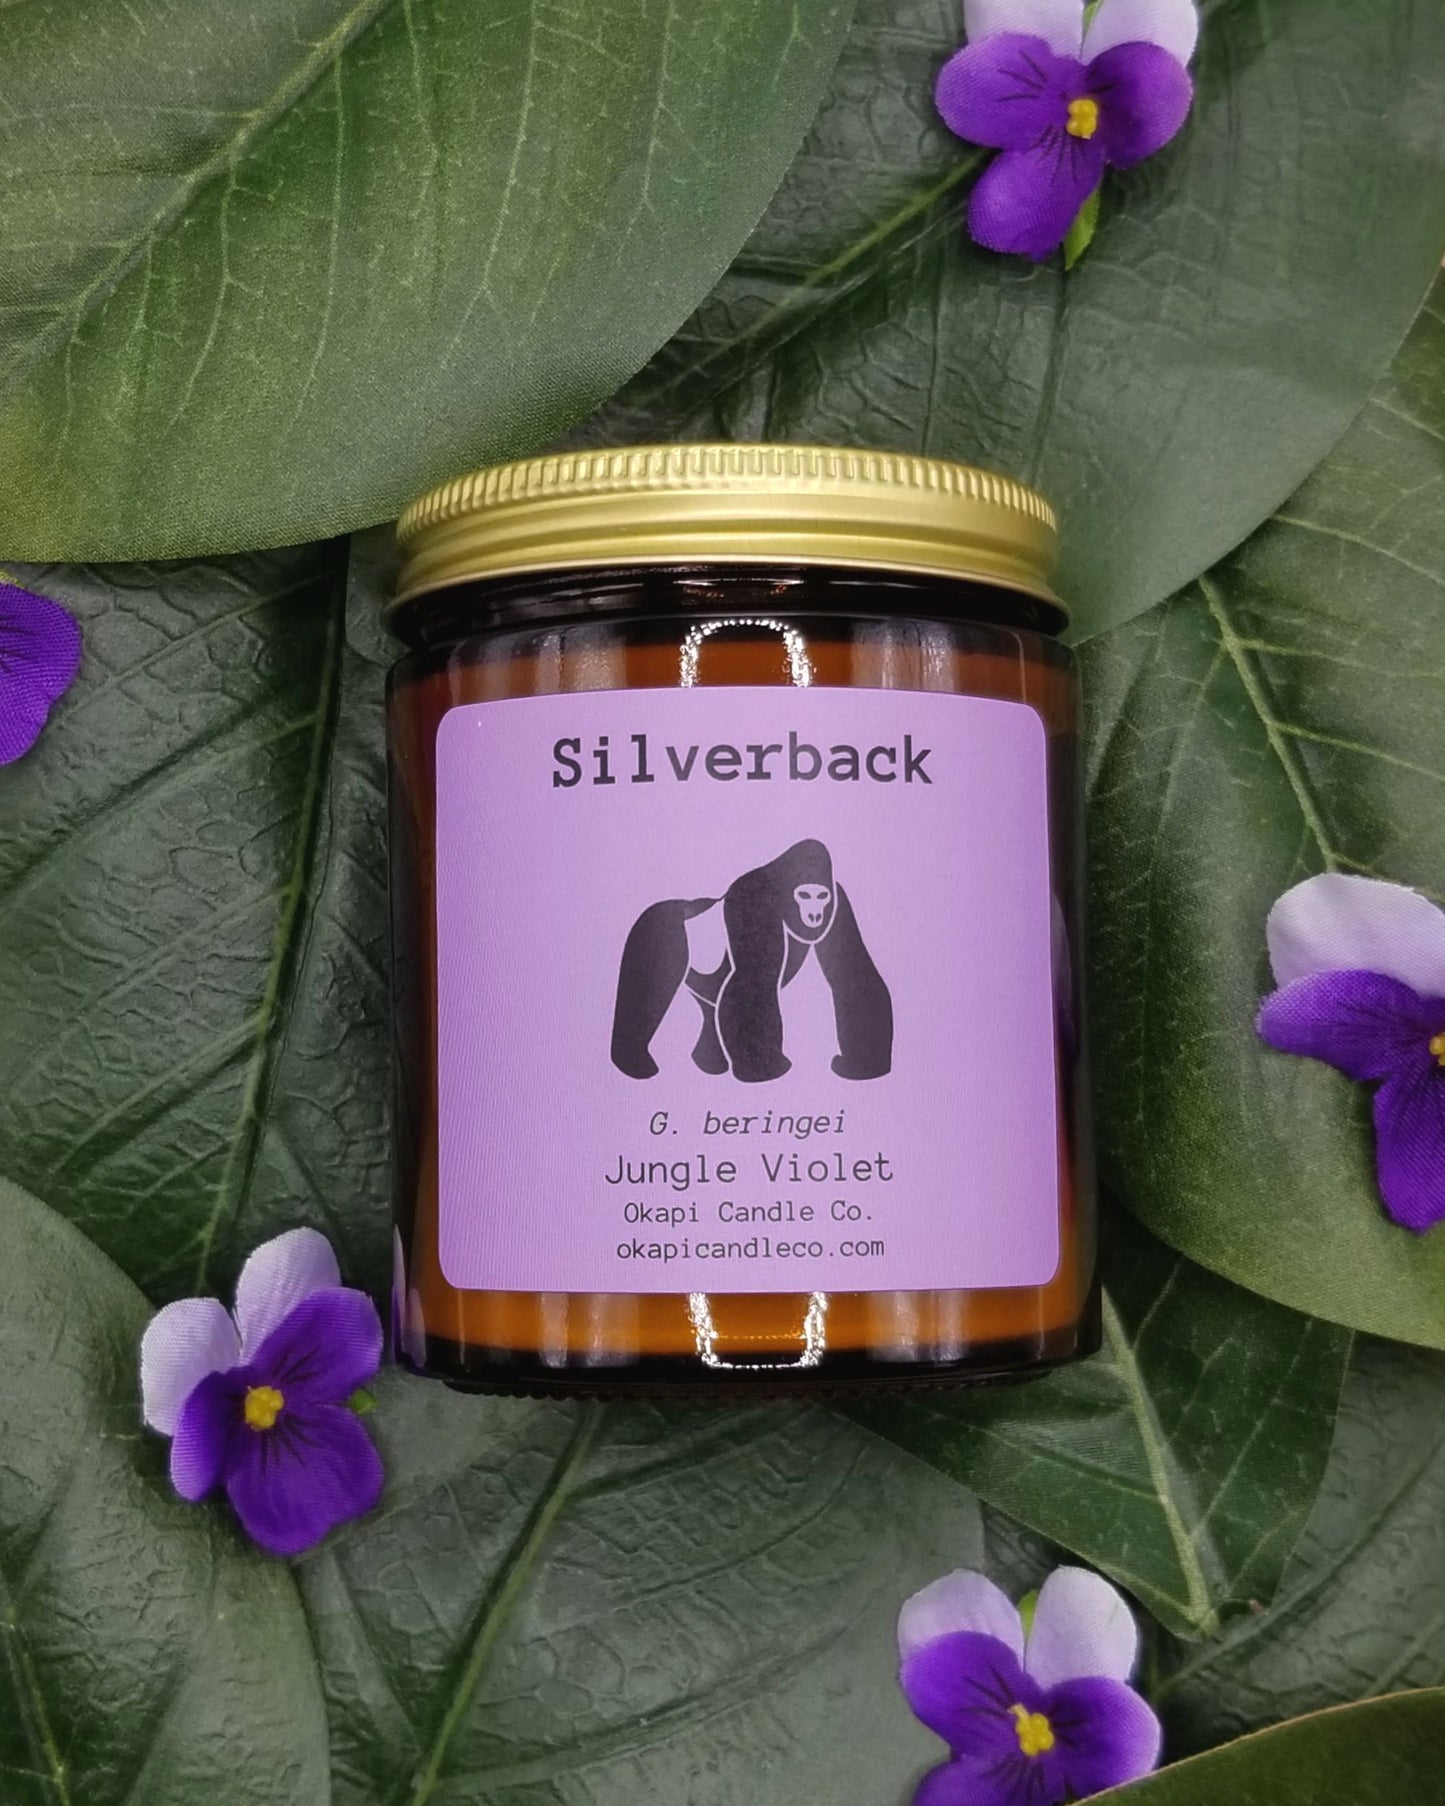 Silverback Gorilla Soy Candle - Jungle Violet Fragrance